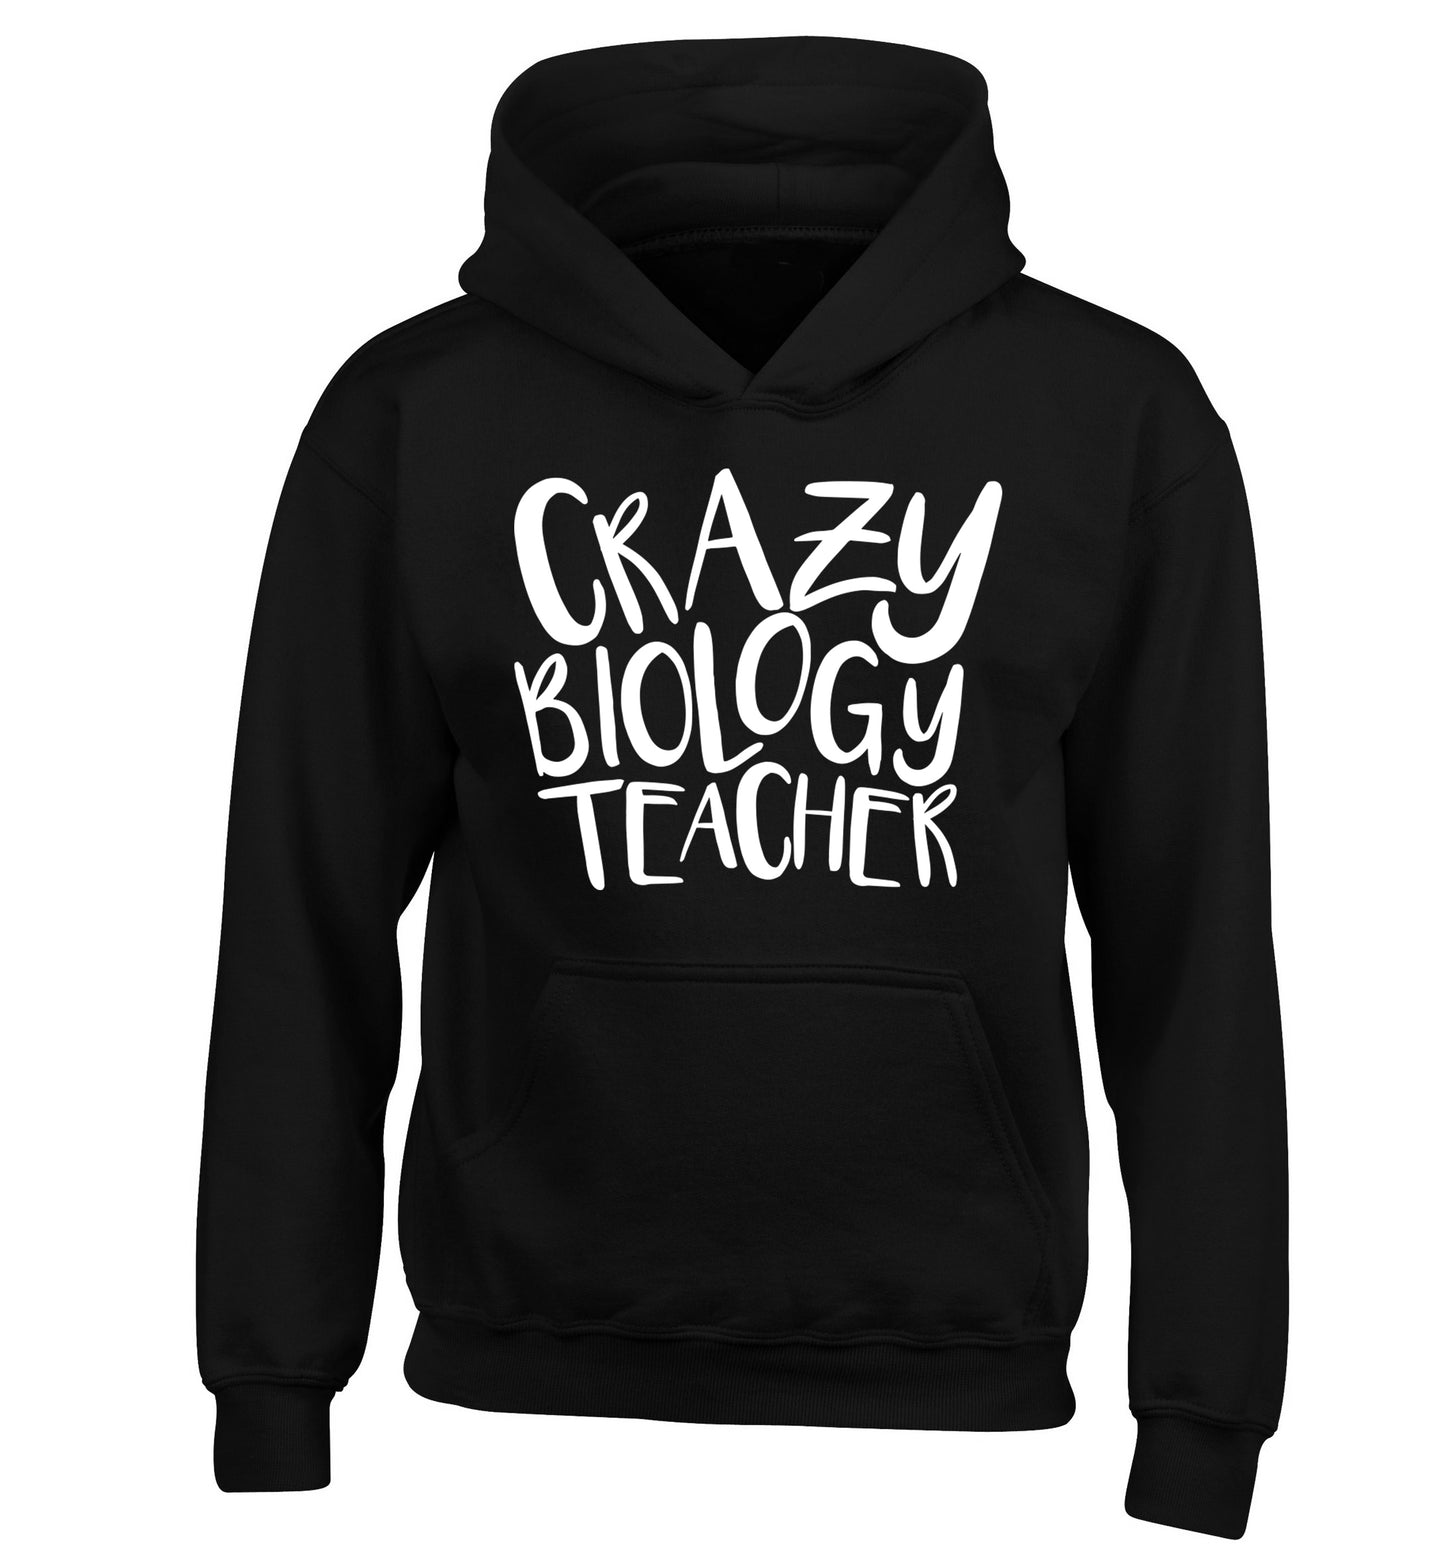 Crazy biology teacher children's black hoodie 12-13 Years